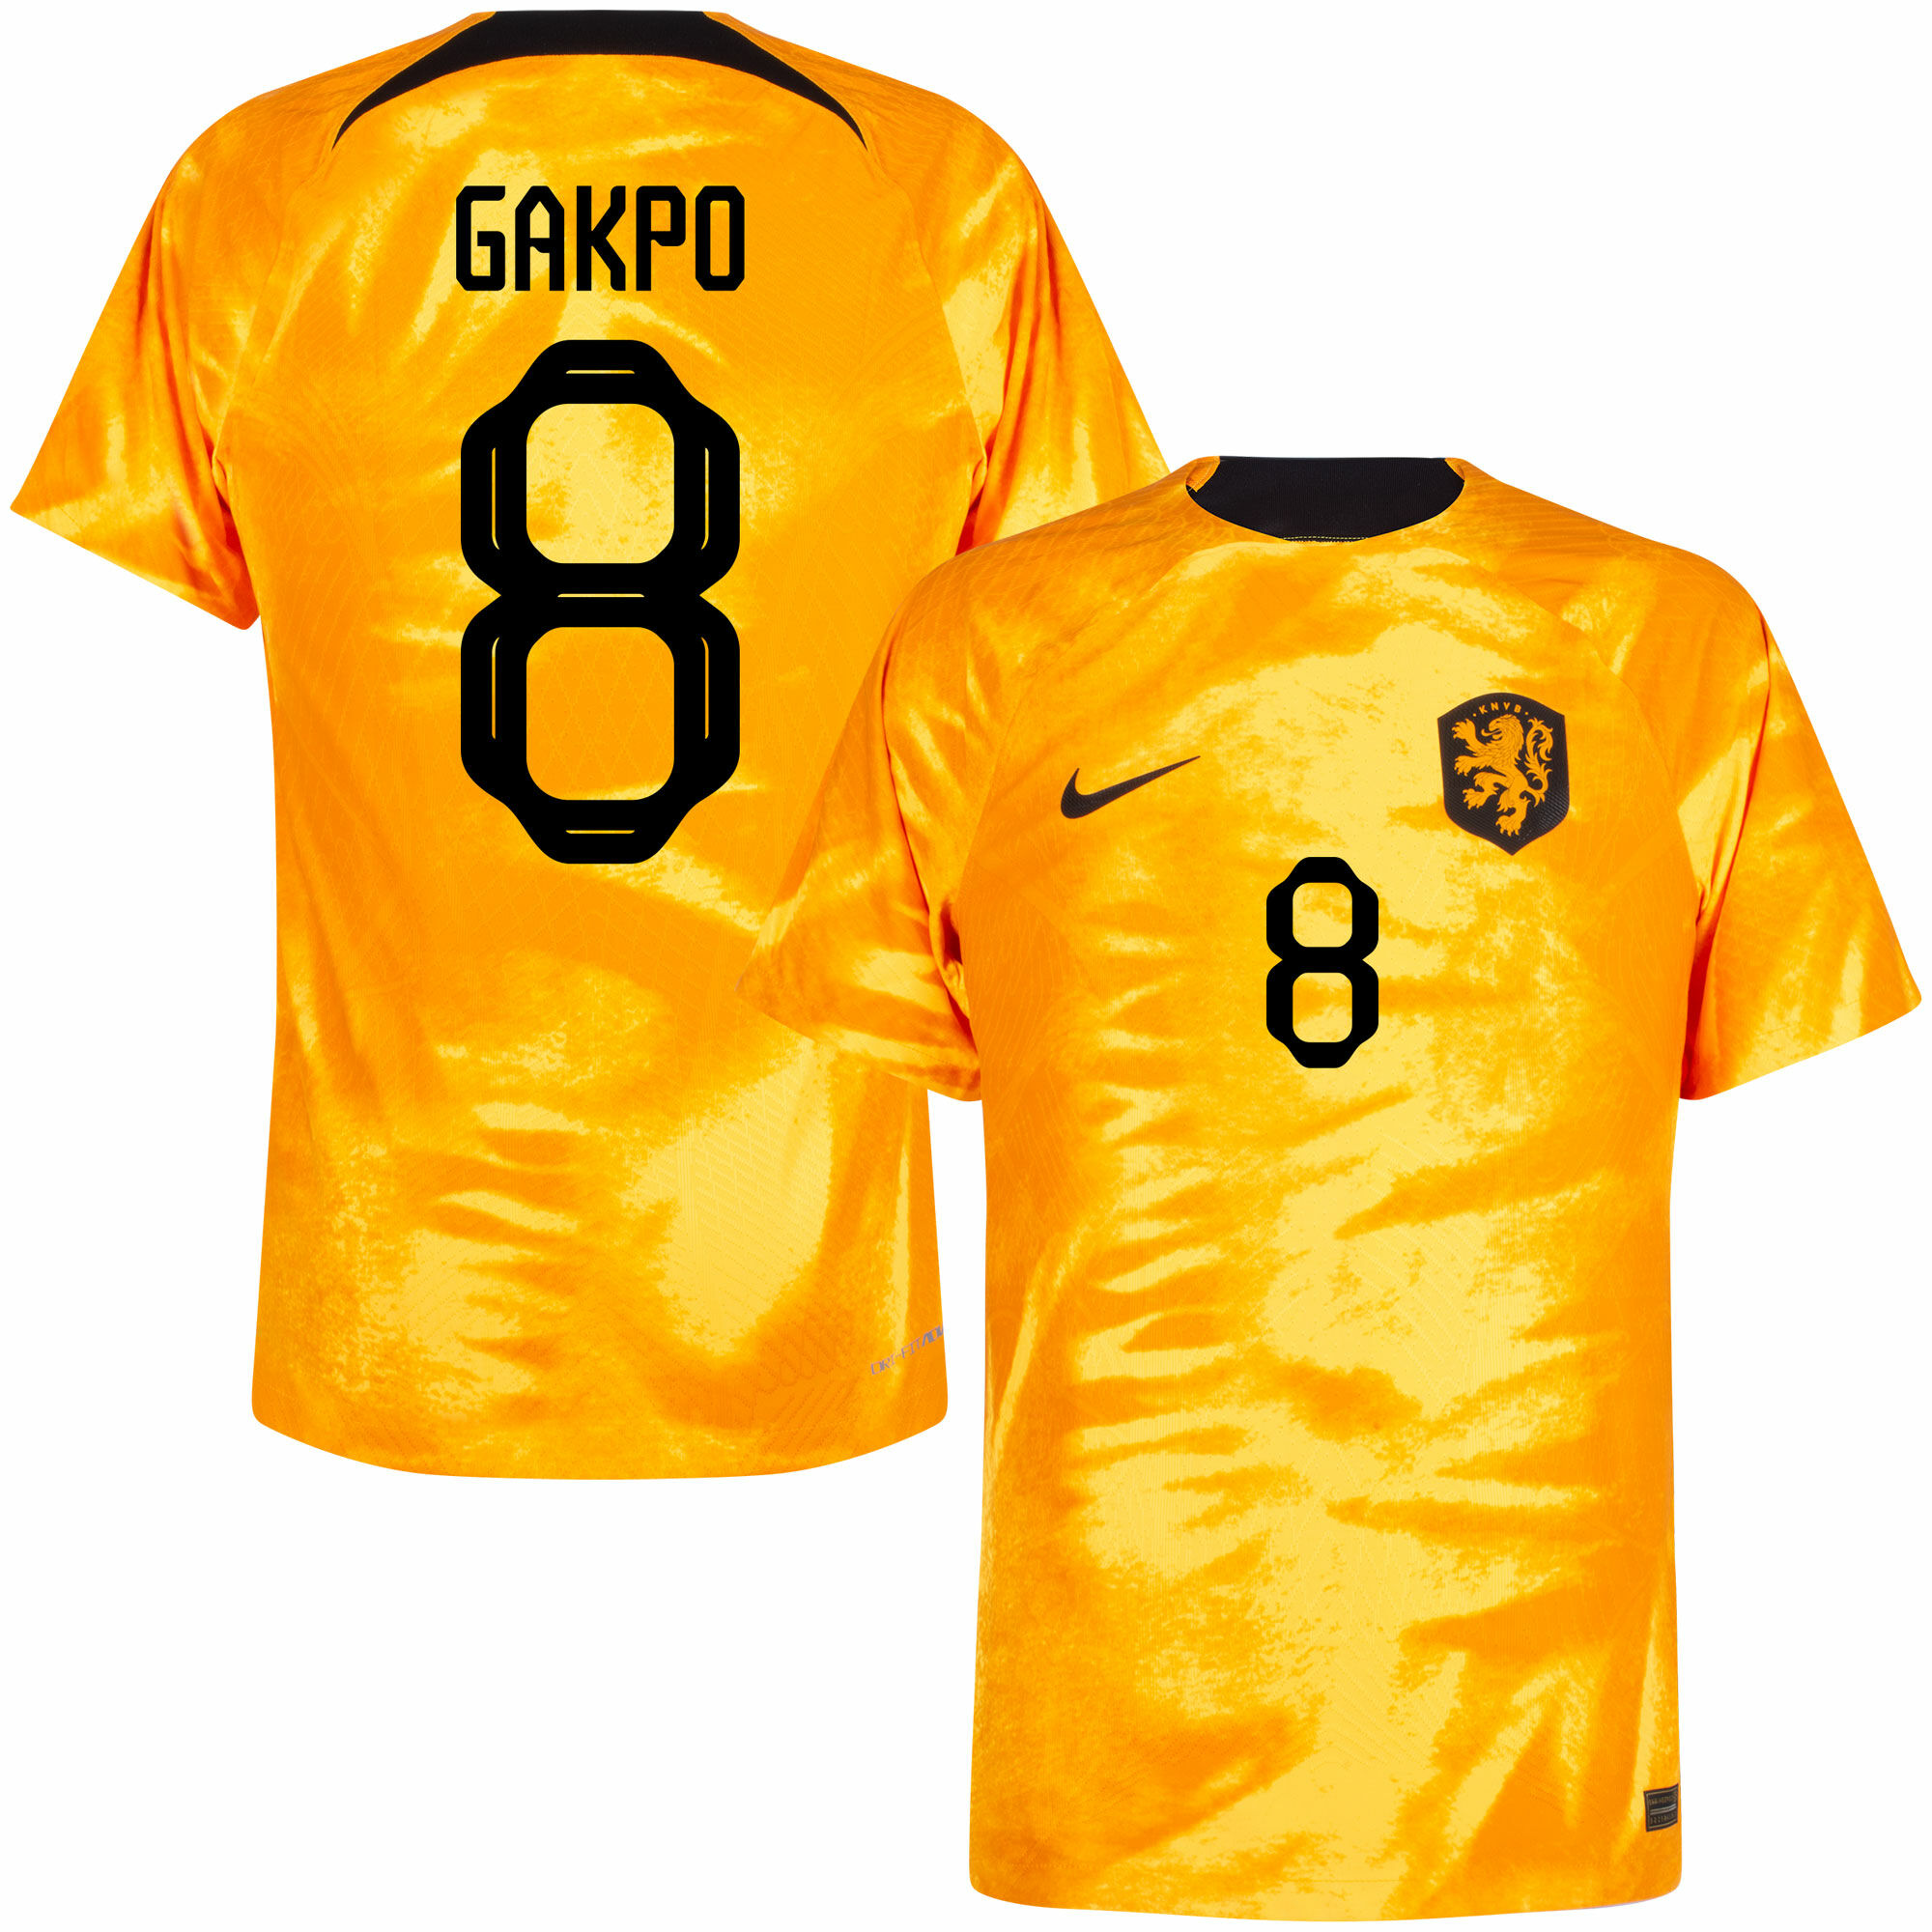 Nizozemí - Dres fotbalový "Match" - oranžový, oficiální potisk, Cody Gakpo, domácí, sezóna 2022/23, Dri-FIT ADV, číslo 8